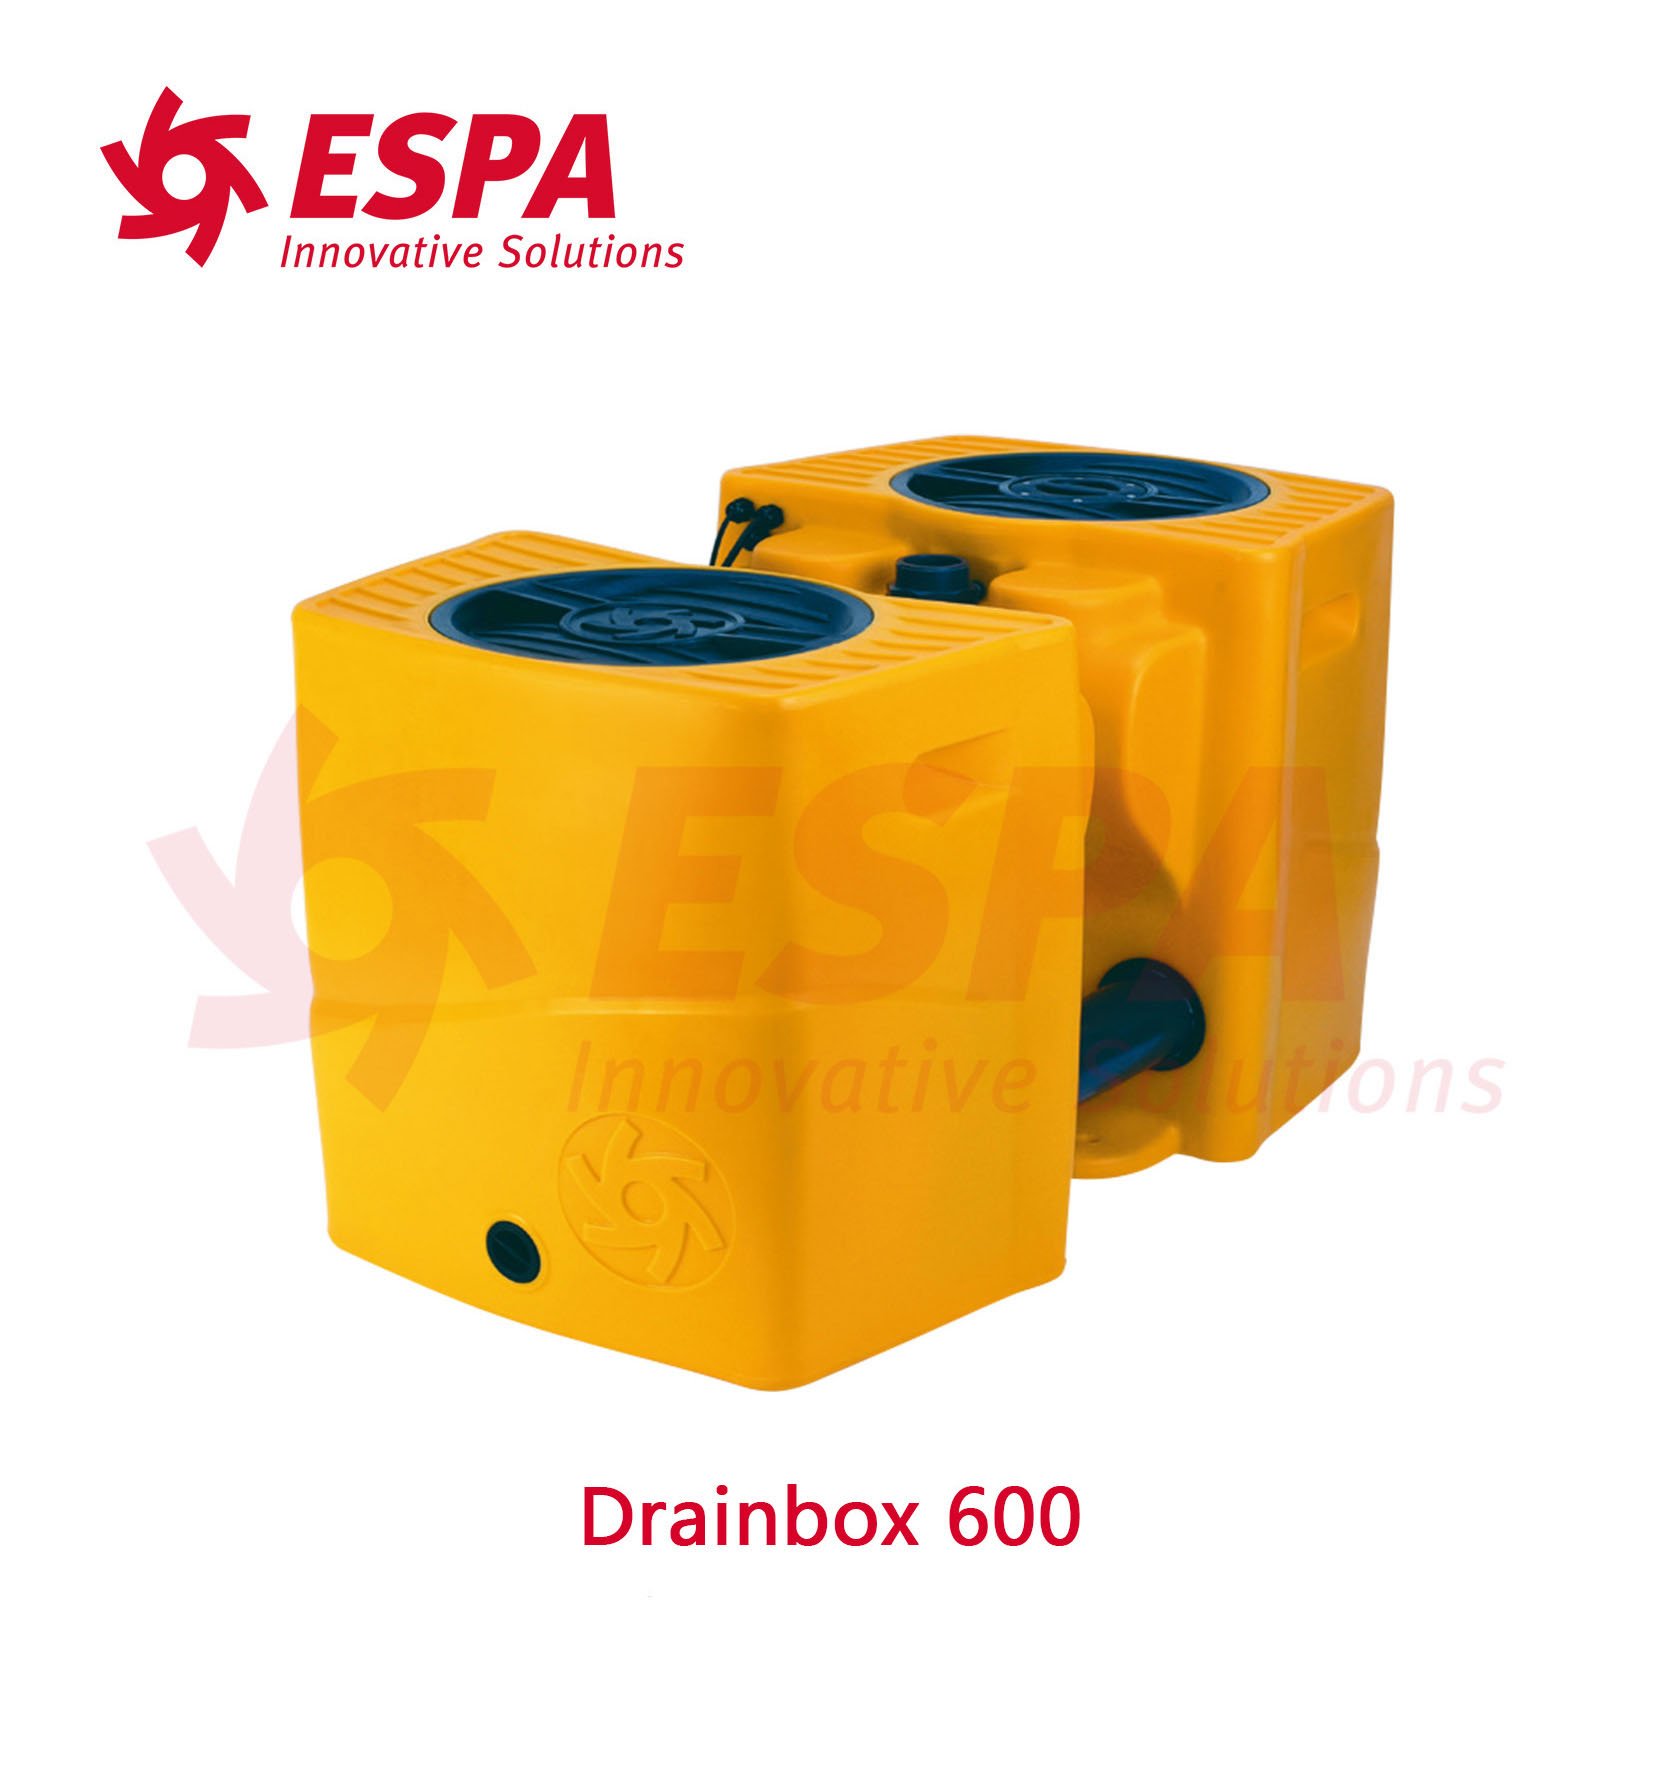 西班牙亚士霸ESPA潜污泵排污泵污水提升装置Drainbox